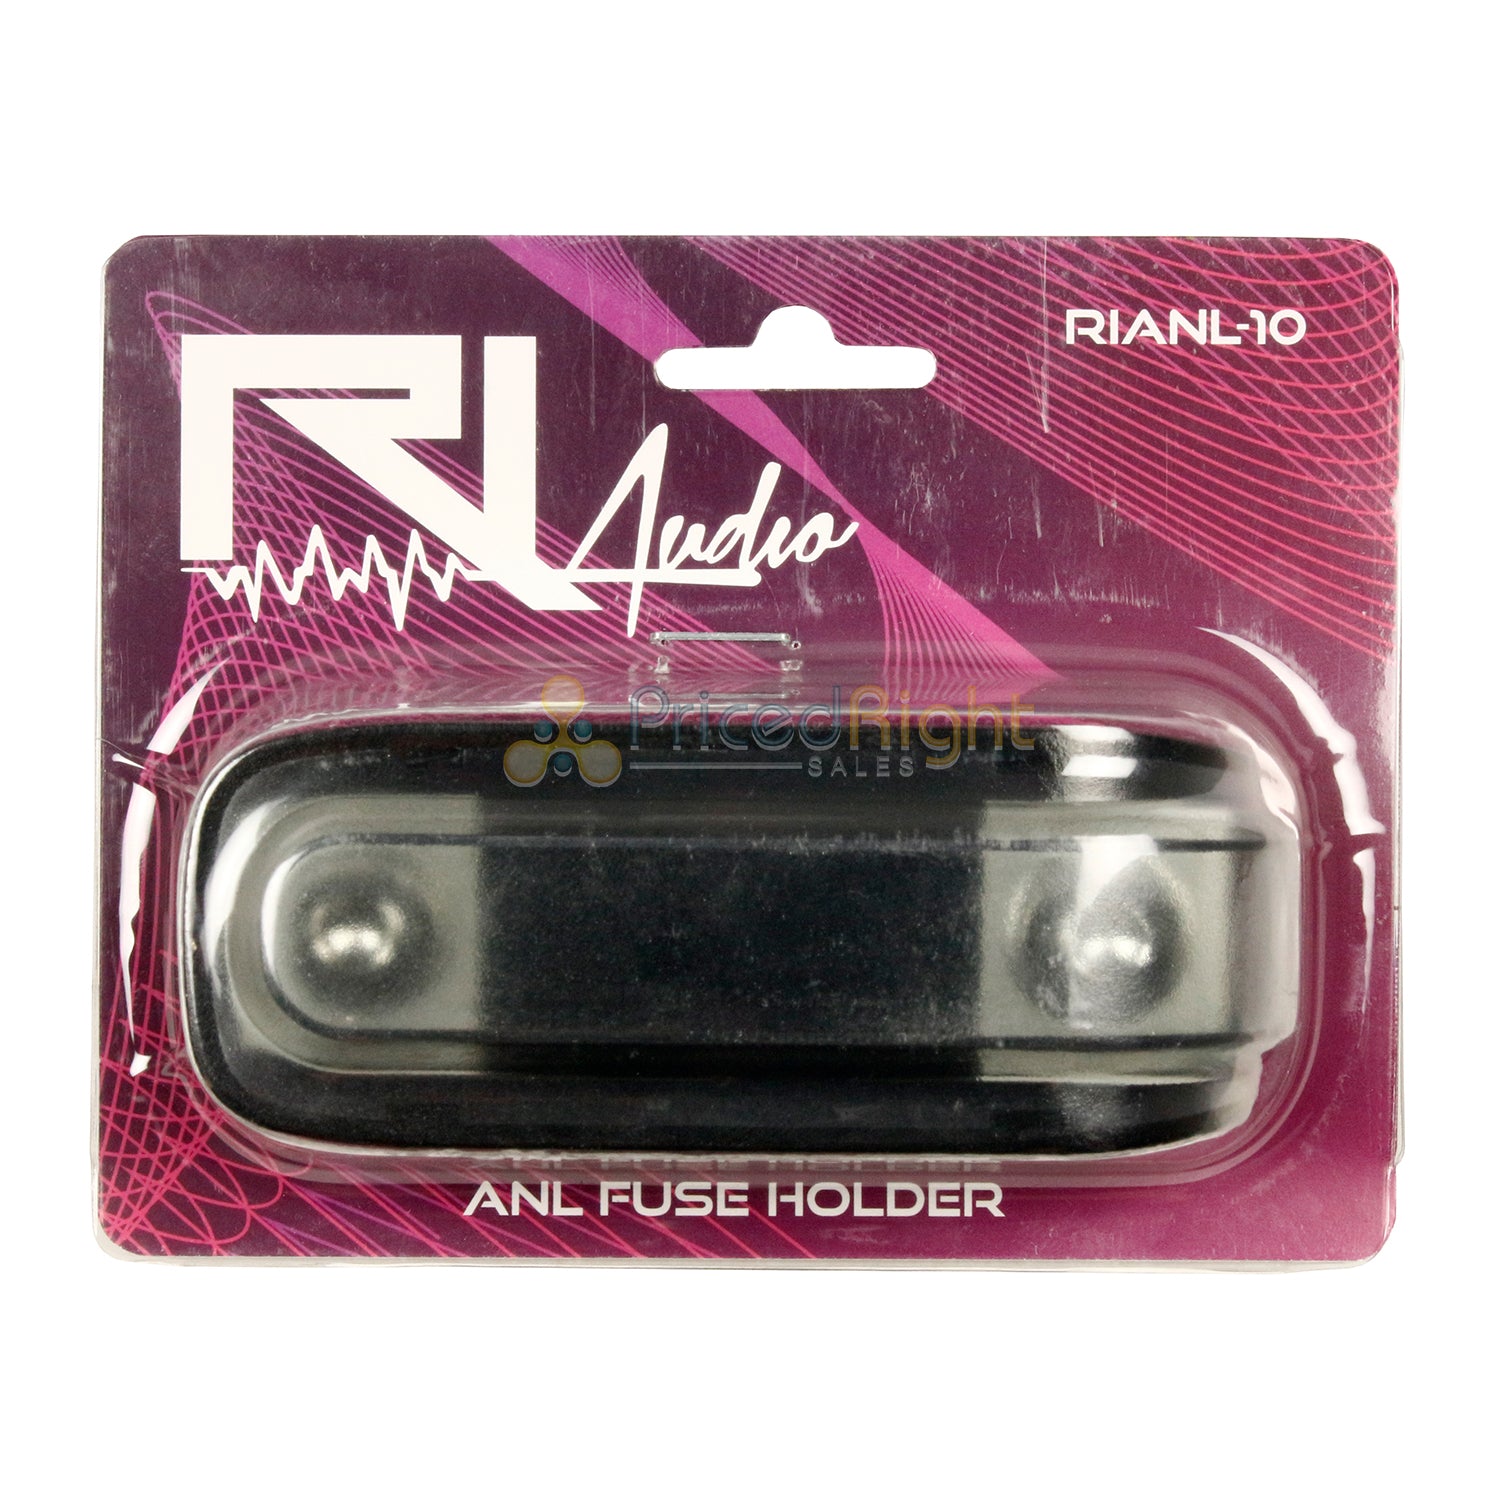 1/0 or 4 Gauge ANL Inline Fuse Holder Car Audio RI Audio RIANL-10 2 Pack